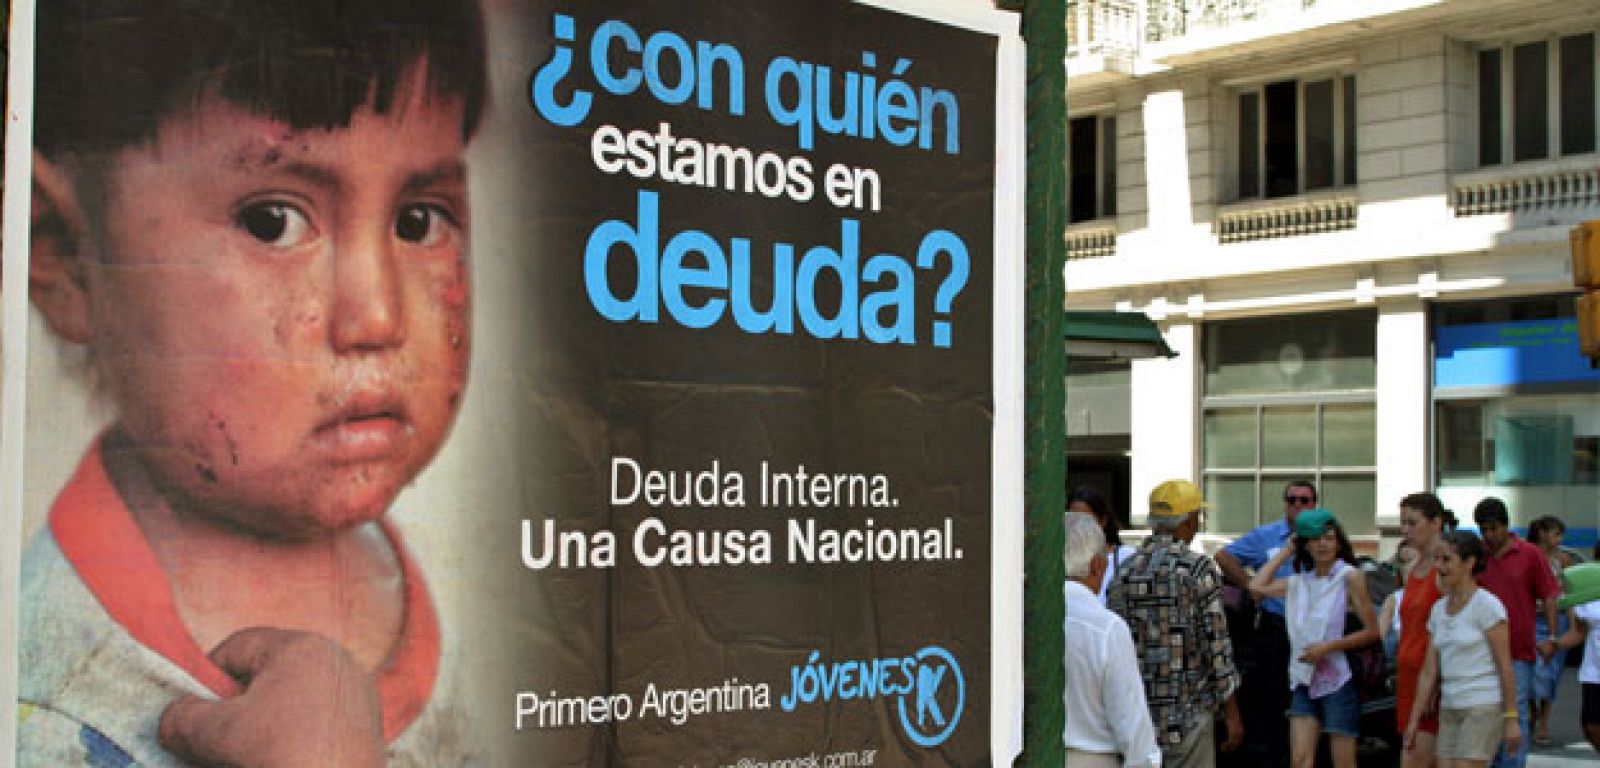 Uno de los carteles que en febrero de 2004 se veían en las calles de Buenos Aires y que hacían referencia a la deuda impagada desde la suspensión de pagos del país en 2001.